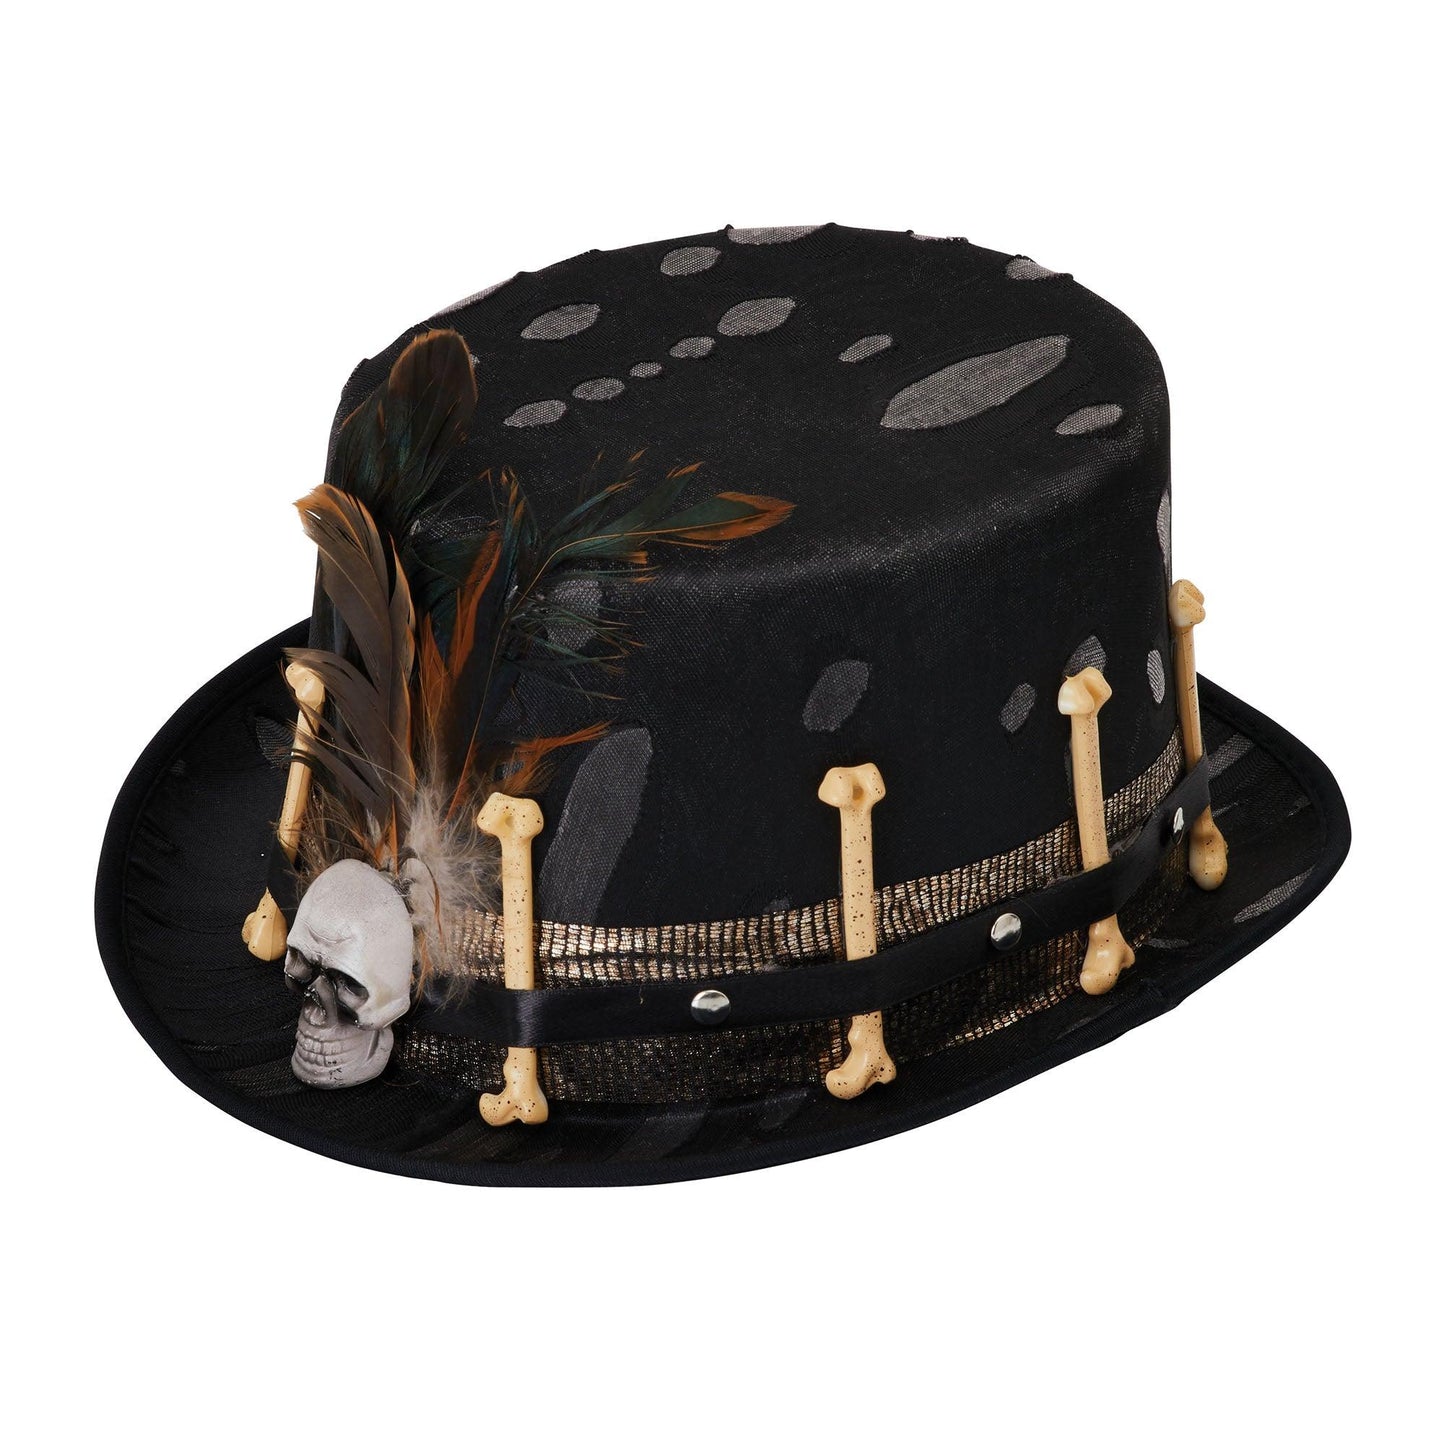 Top Hat Black Voodoo Style - Labreeze